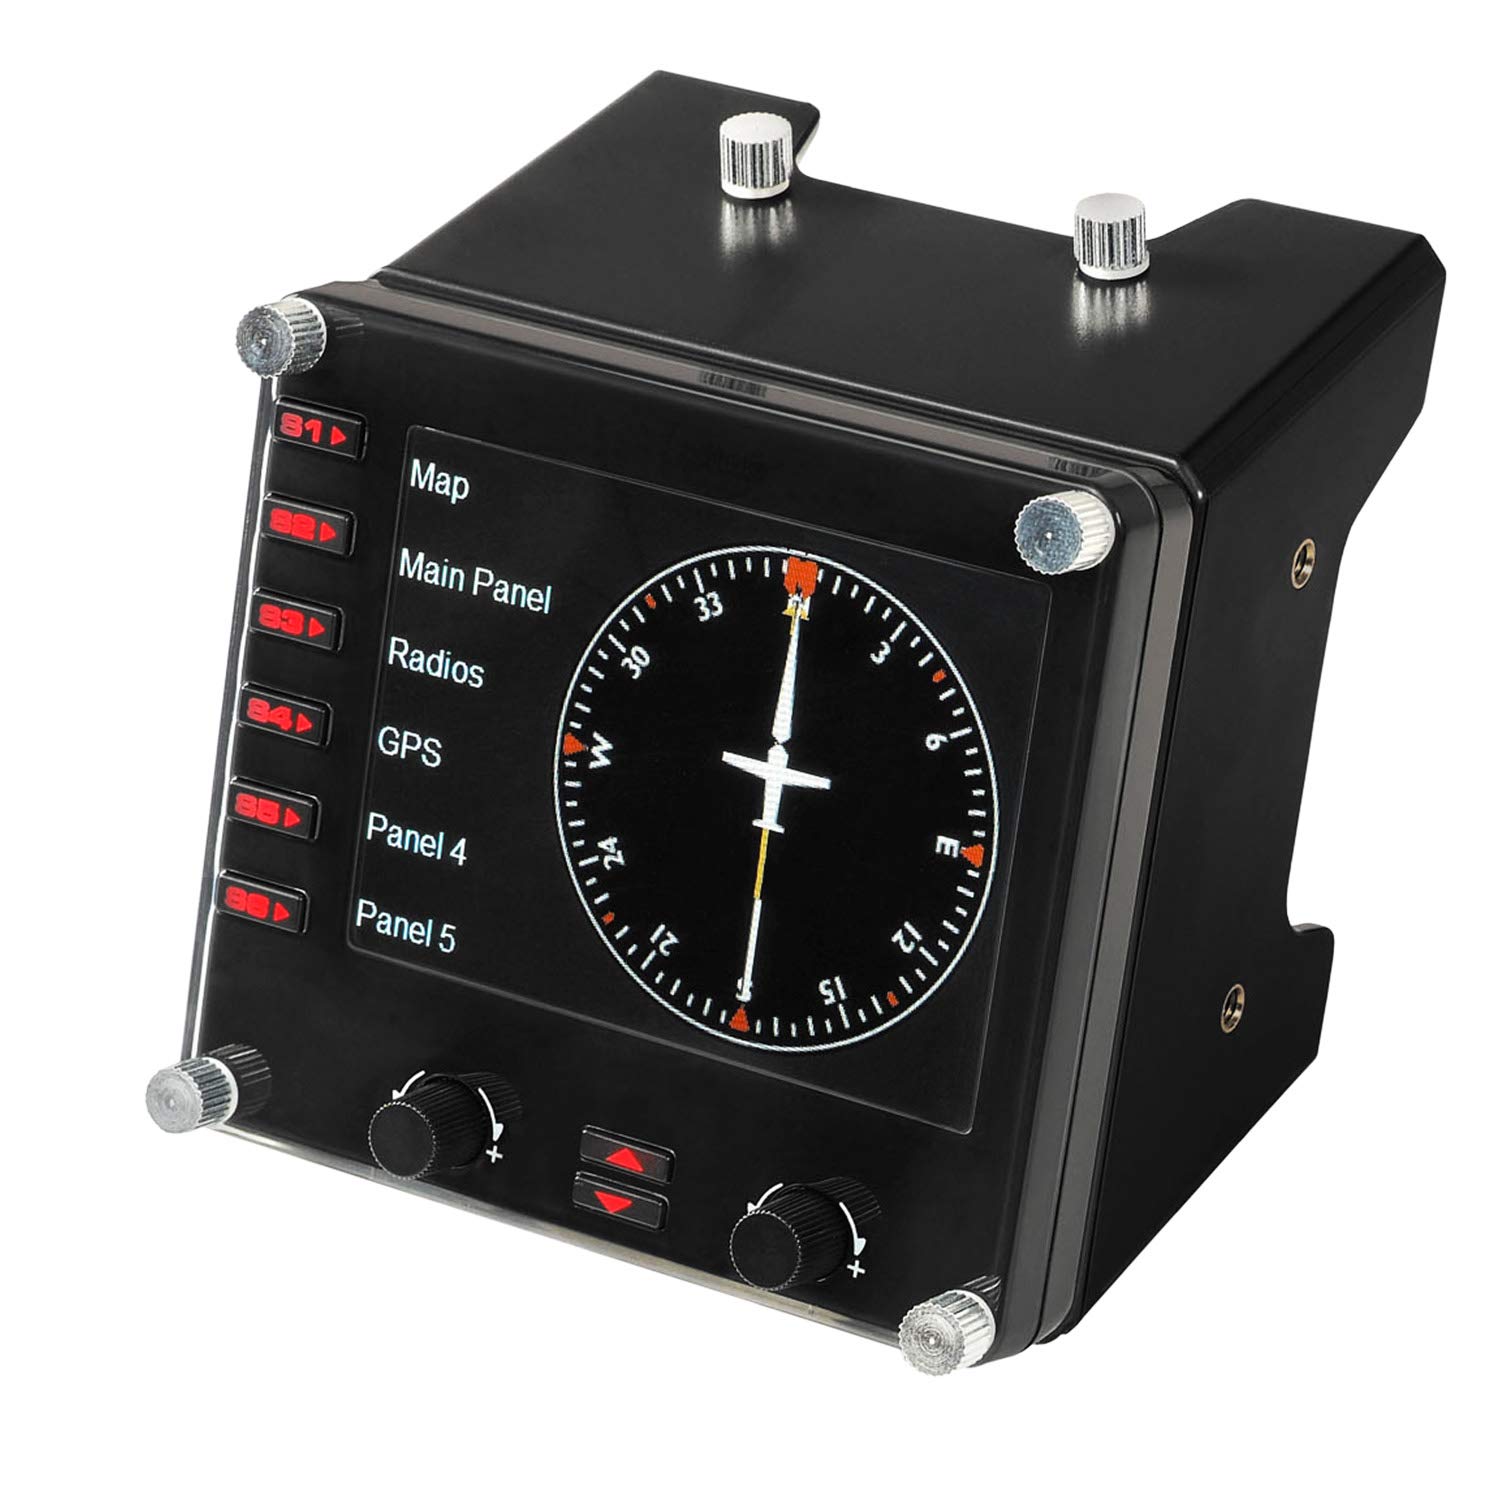 Logitech G Saitek Pro Flight Instrumenten-Panel, Steuerpanel für Flug Simulatoren, 3.5 Zoll LCD-Farbdisplay, 15 Anzeigeoptionen, USB-Anschluss, Erweiterbar, PC - Schwarz